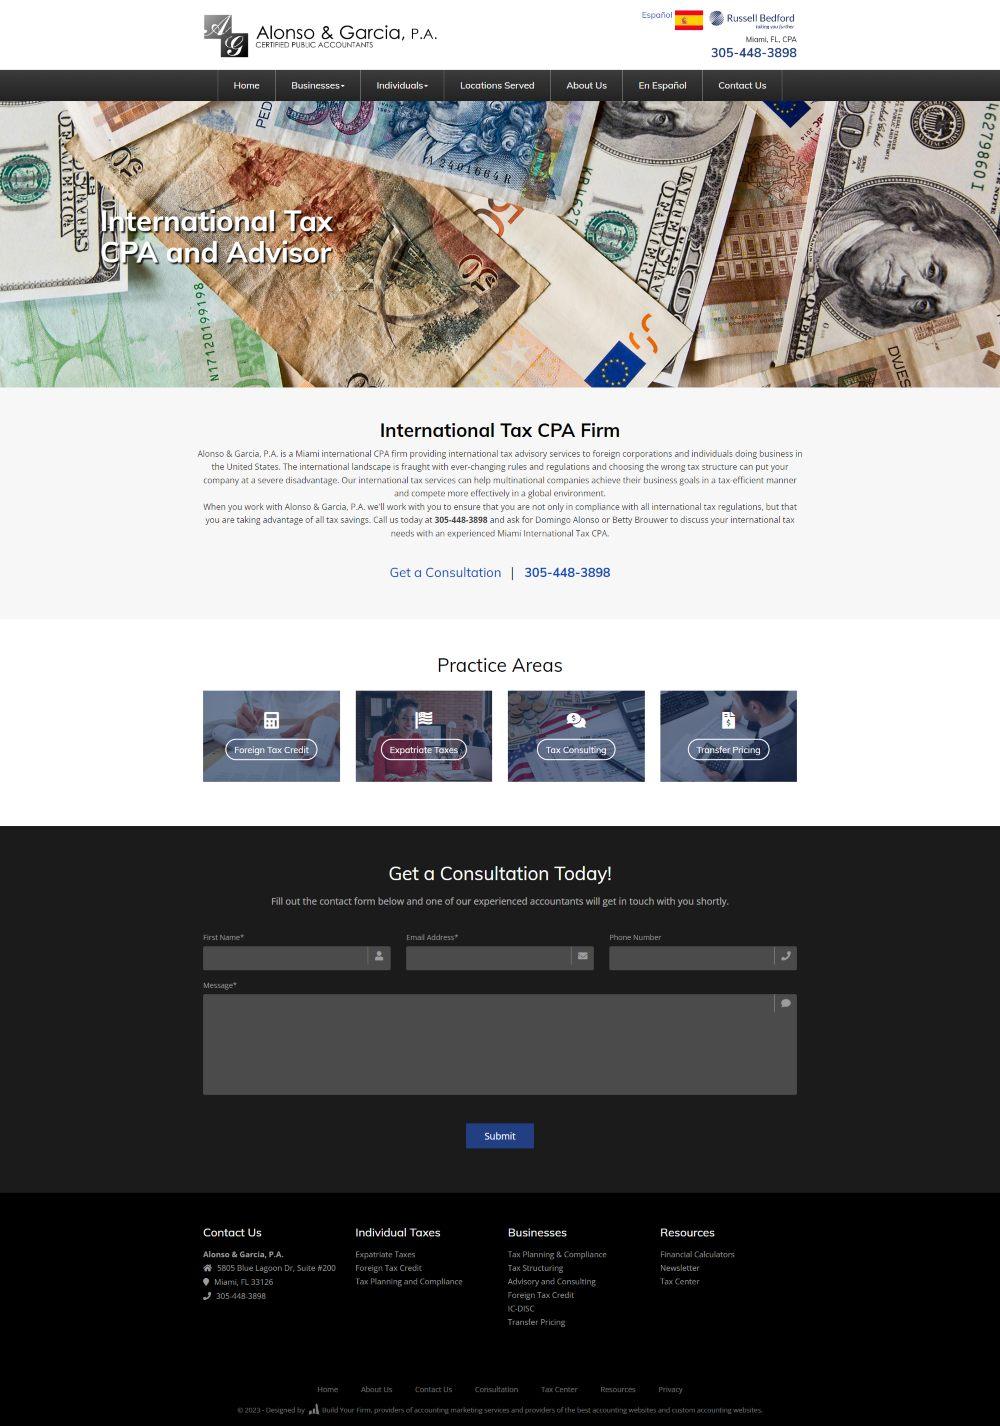 International Tax Website Design